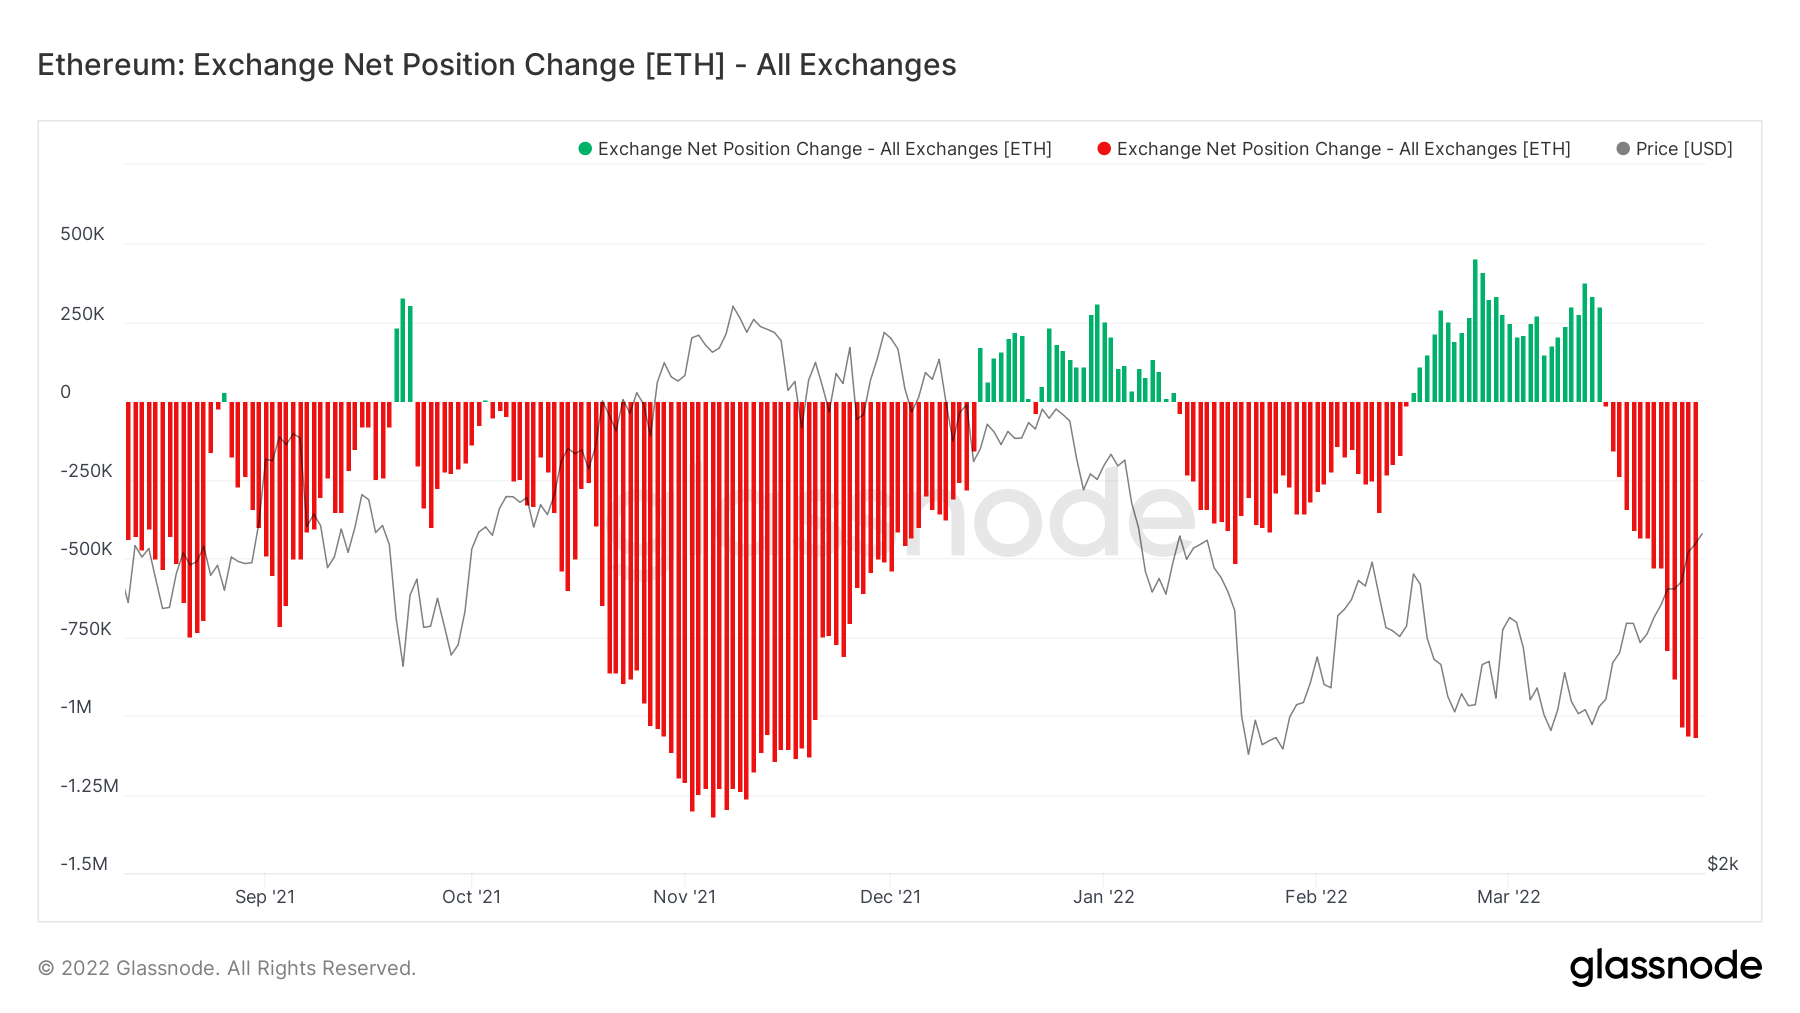 ETH exchange net position change